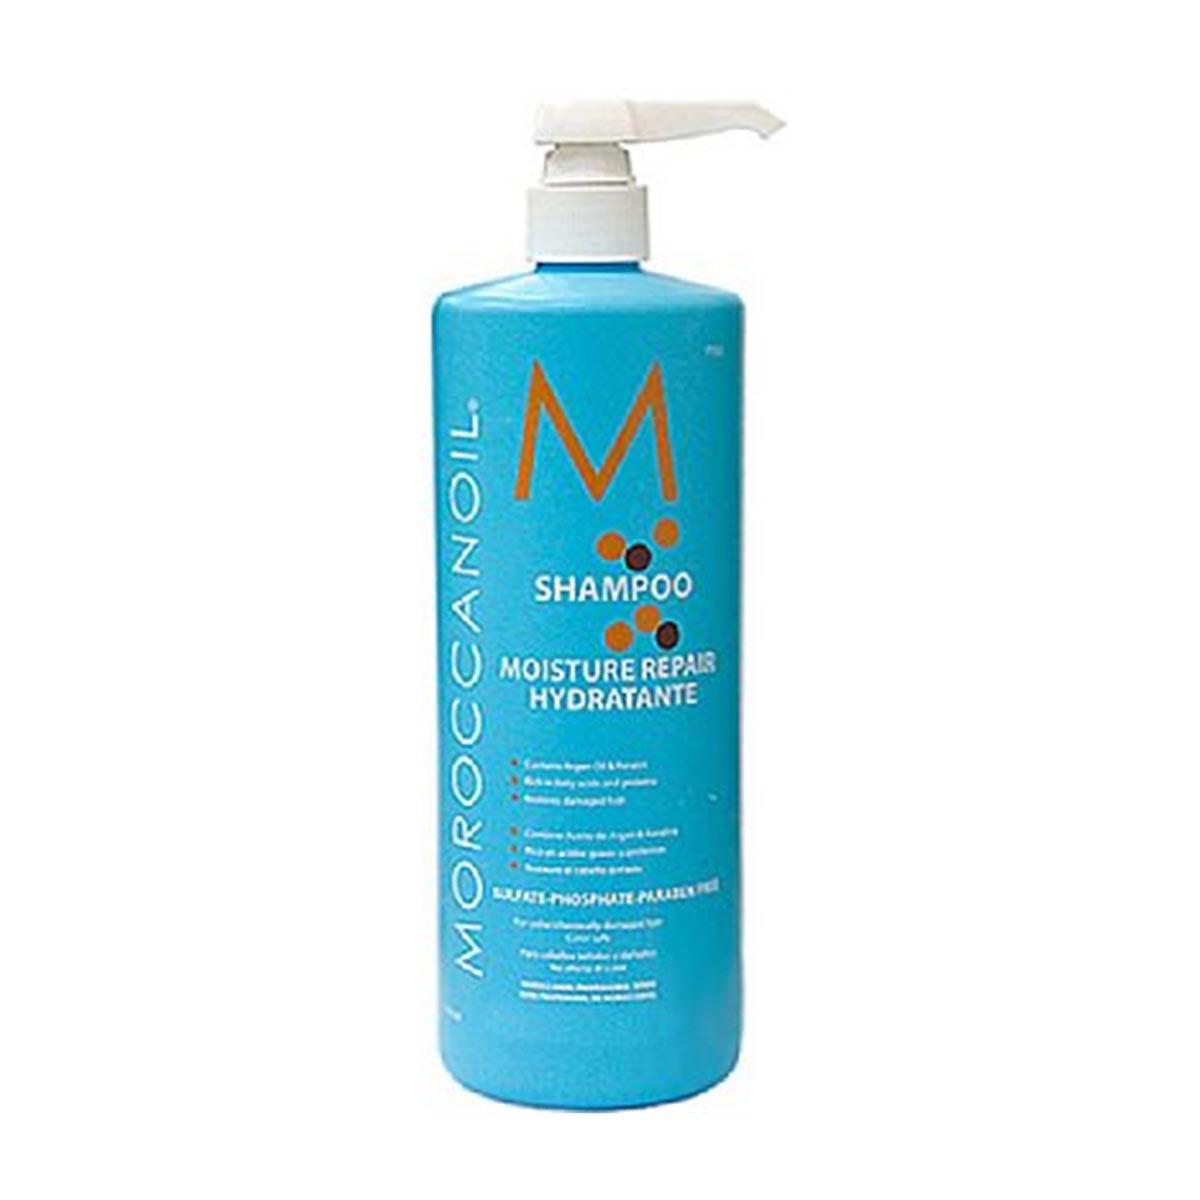 moroccanoil-sjampo-moisture-repair-hydratante-1000ml